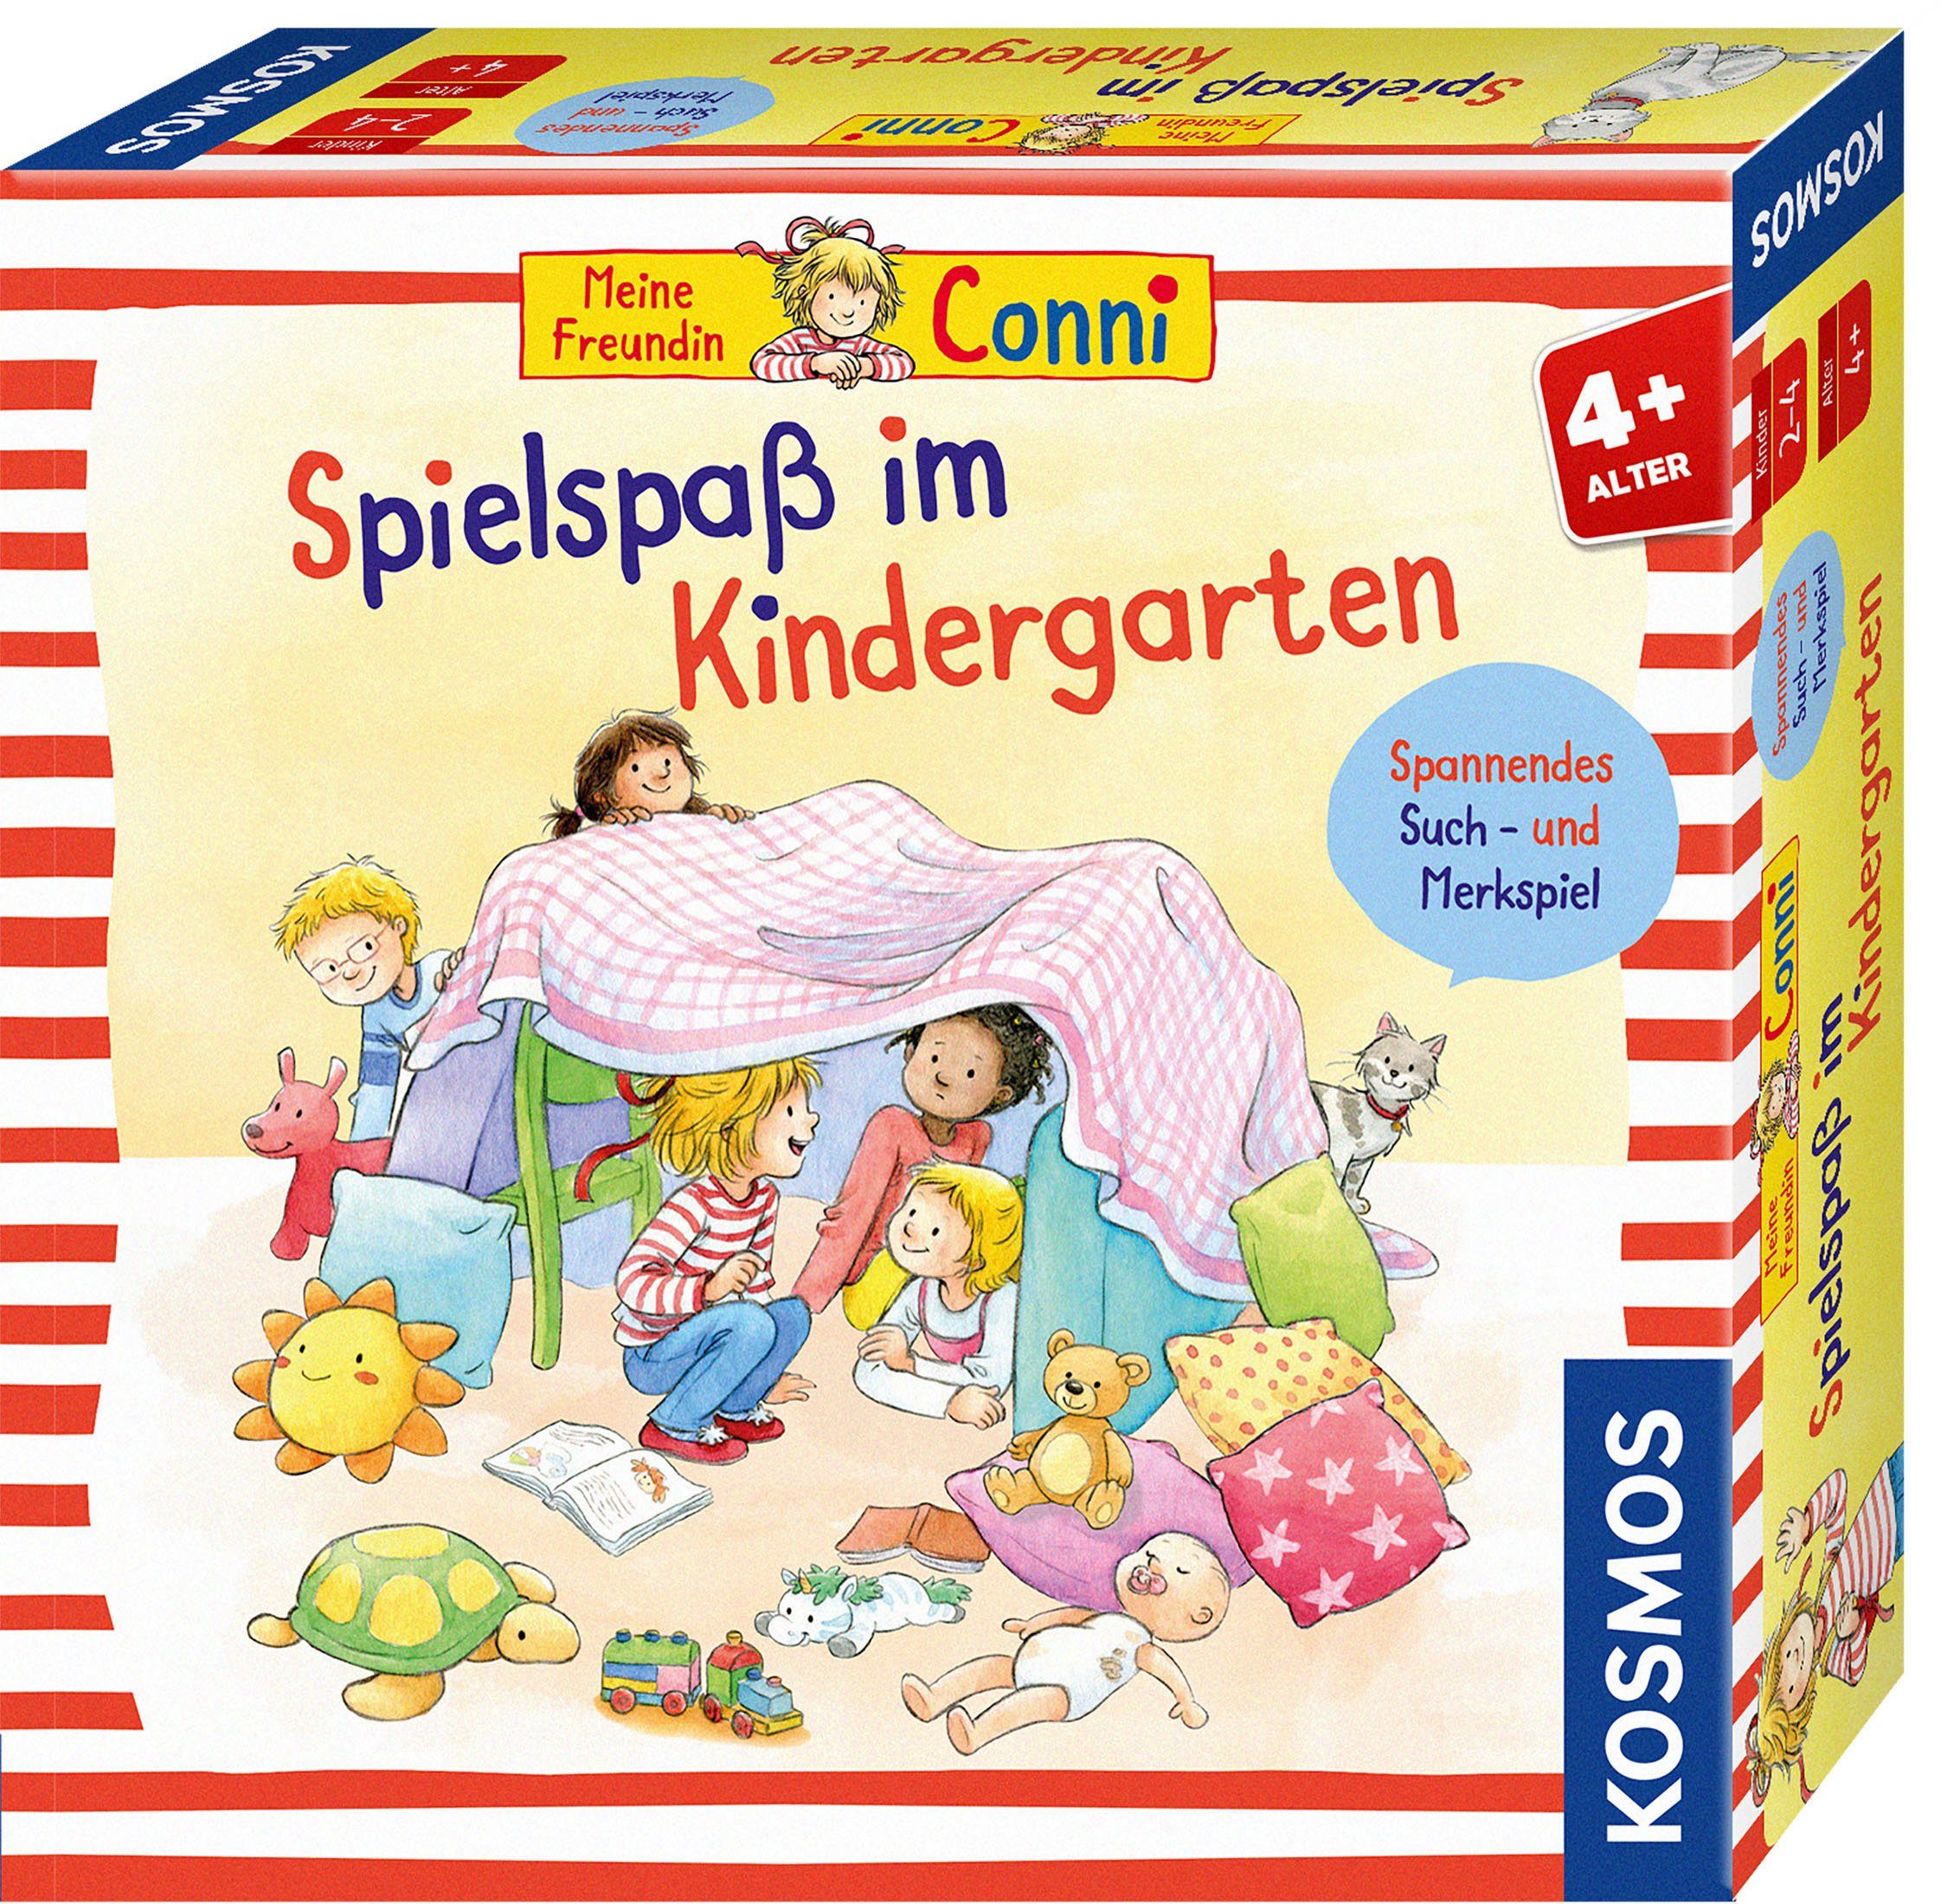 Kinderspiel in Conni - Kindergarten, Kosmos Spielspaß Made Germany Spiel, im